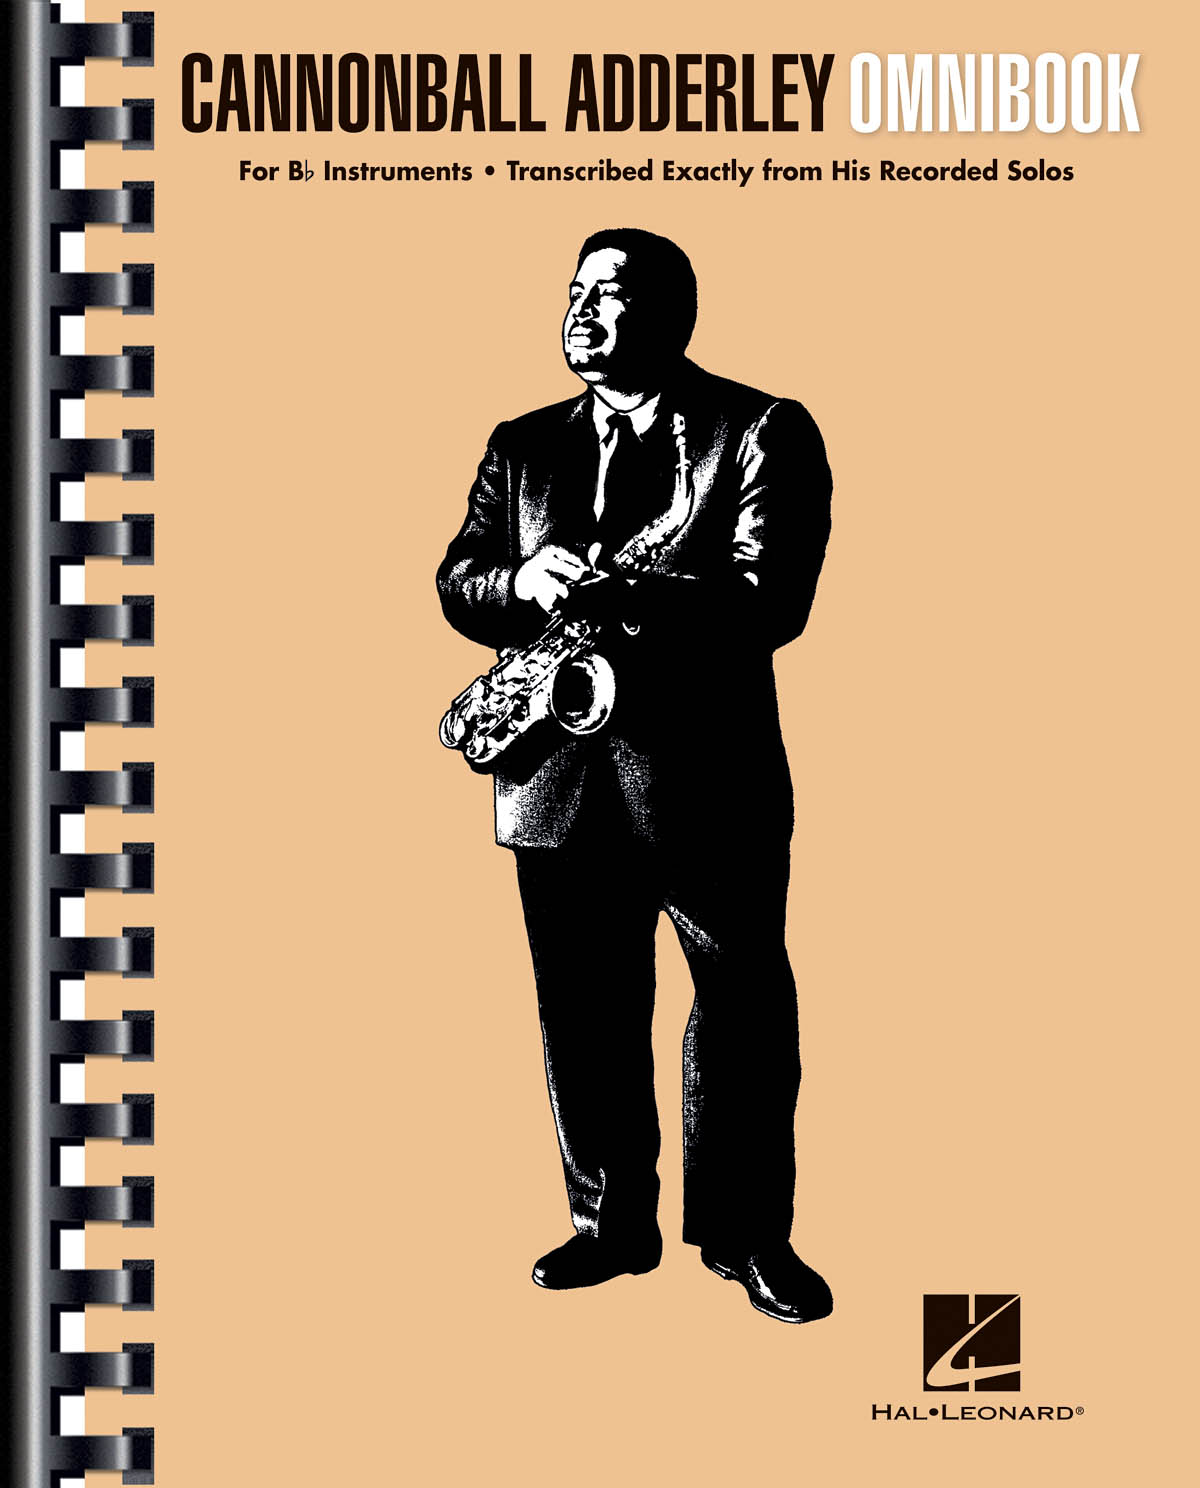 Cannonball Adderley – Omnibook - For B-flat Instruments - melodie pro nástroje v různém ladění